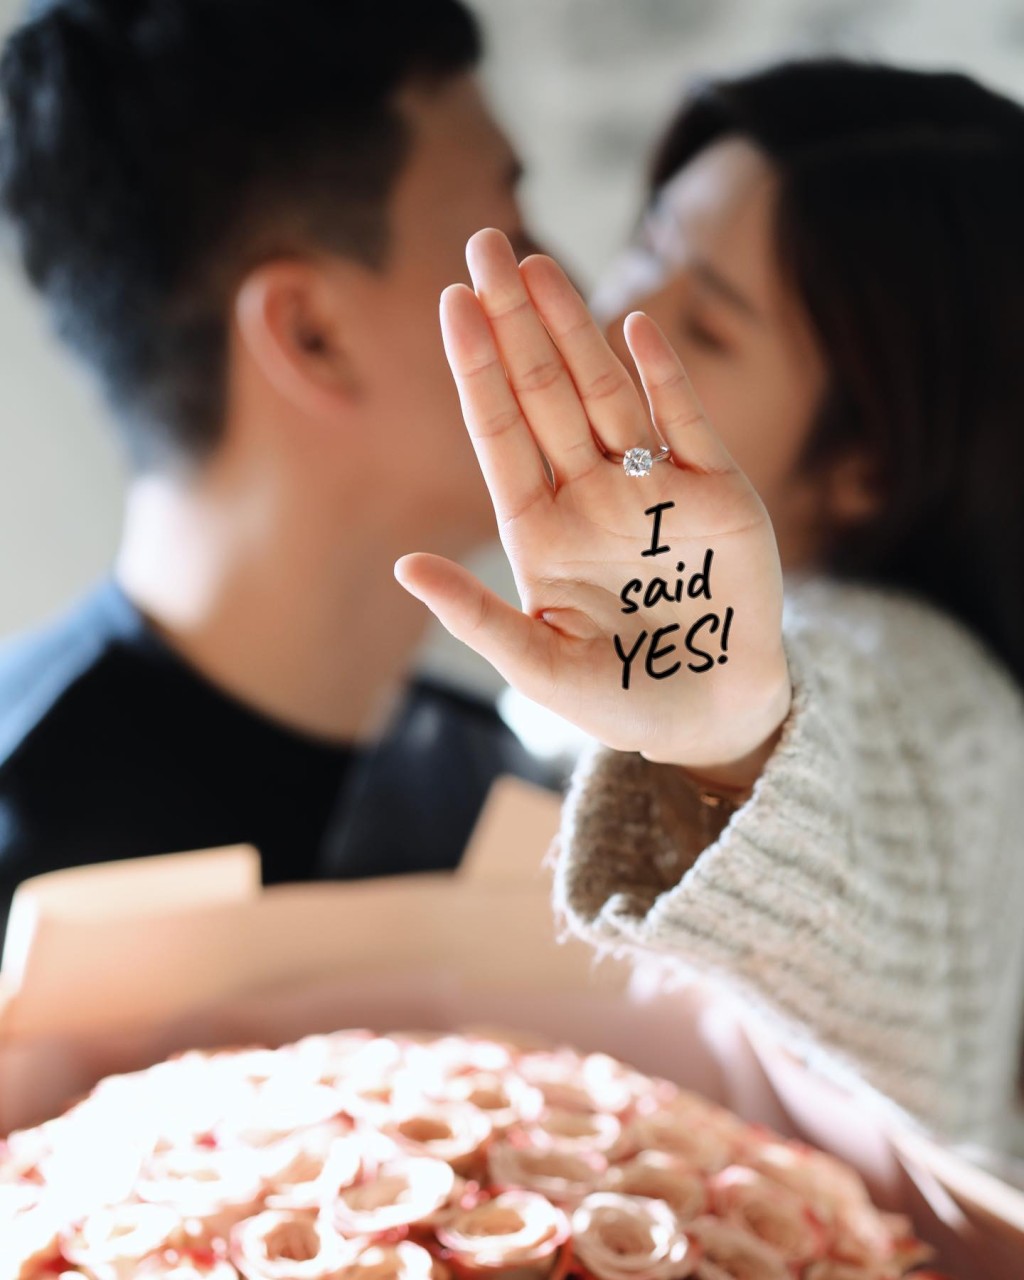 接受了男友陳張敏的求婚。